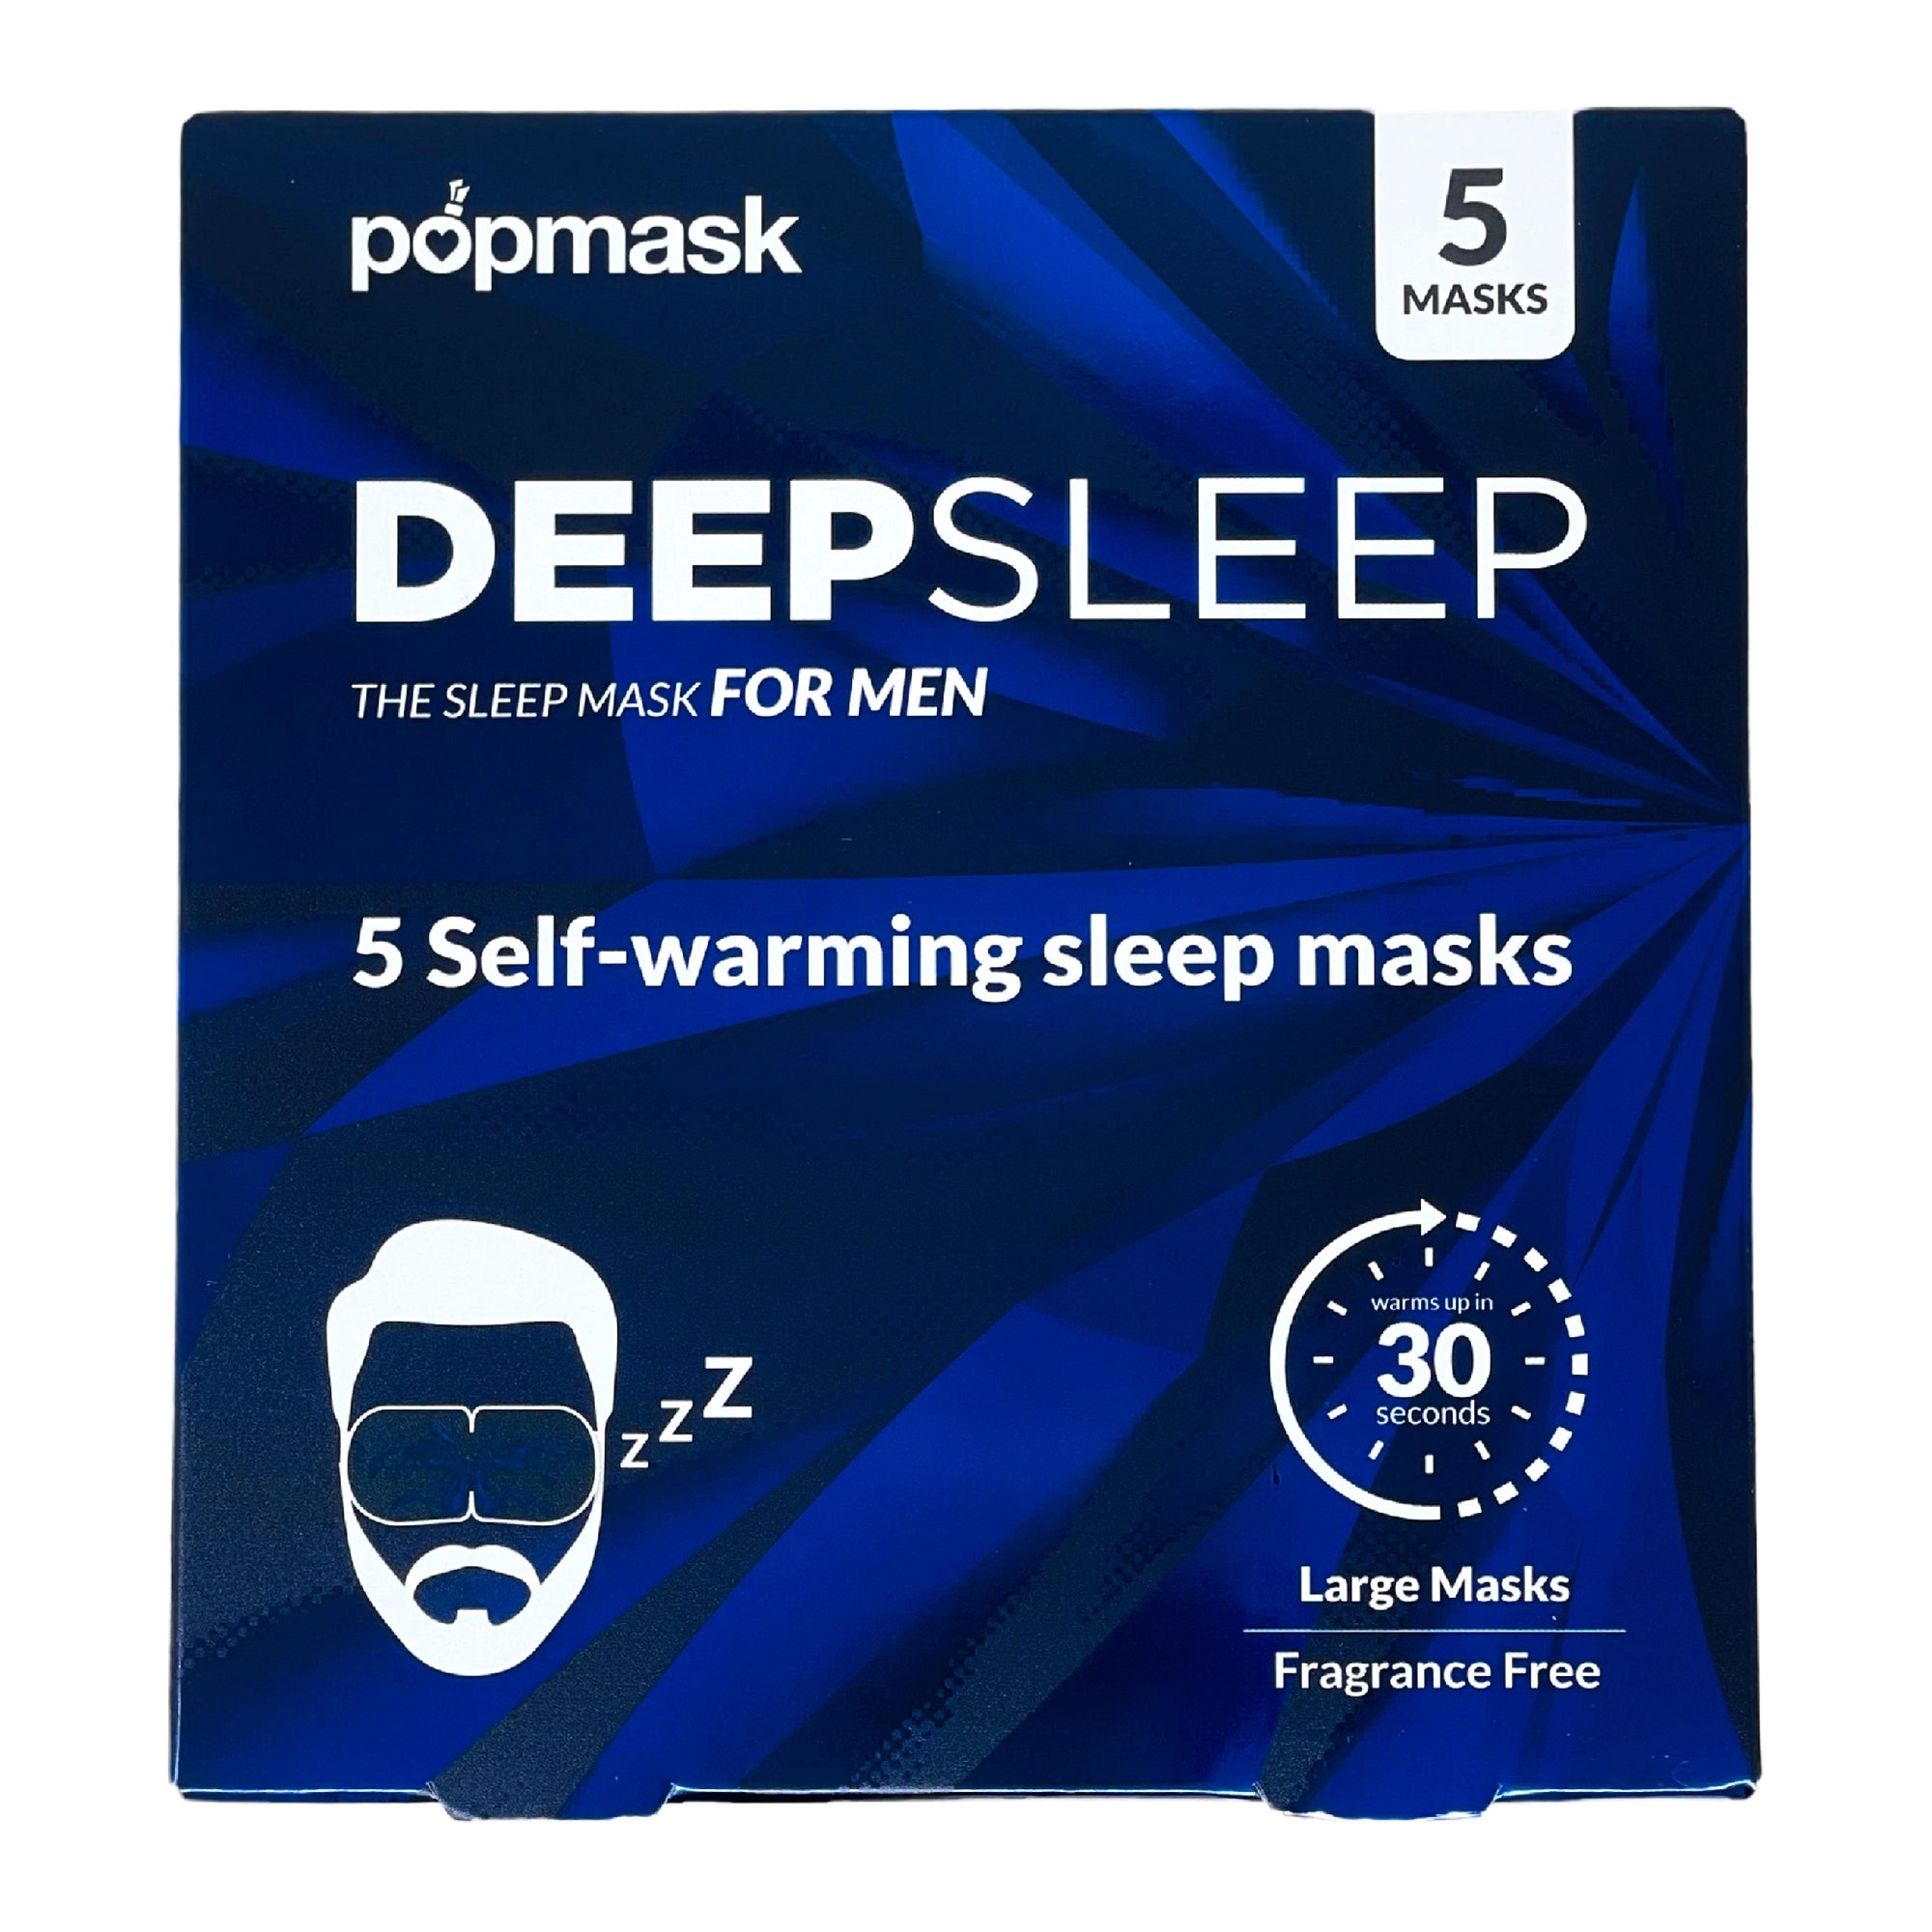 Popmask Deep Sleep Mask